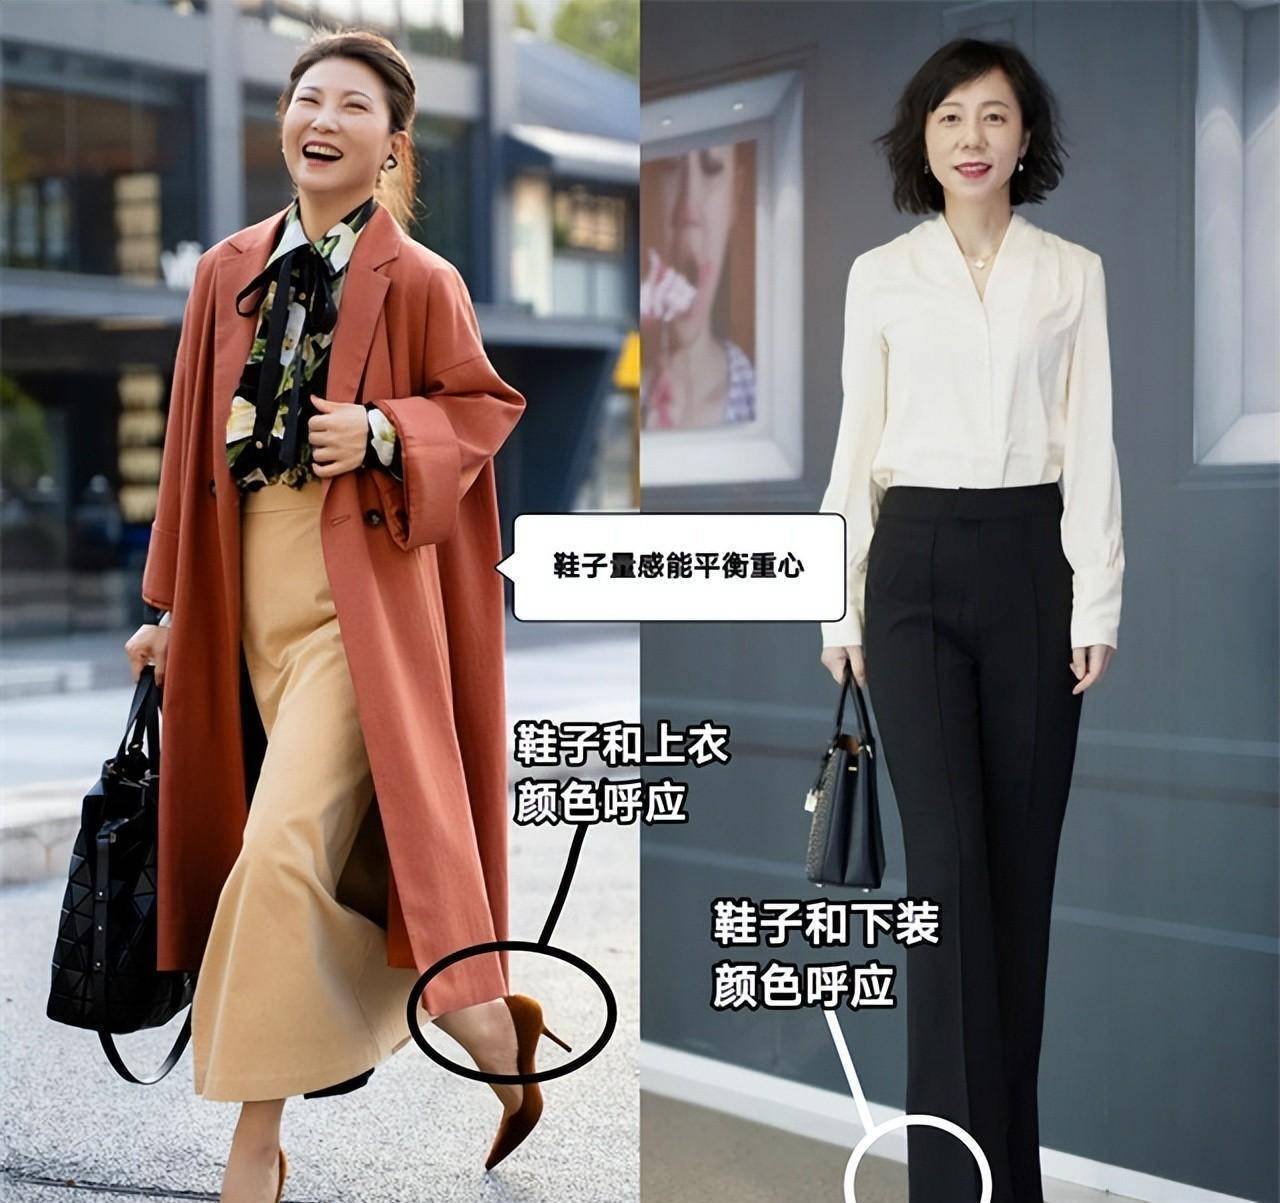 中年女新的穿搭需要避免的元素(5)-中国着装